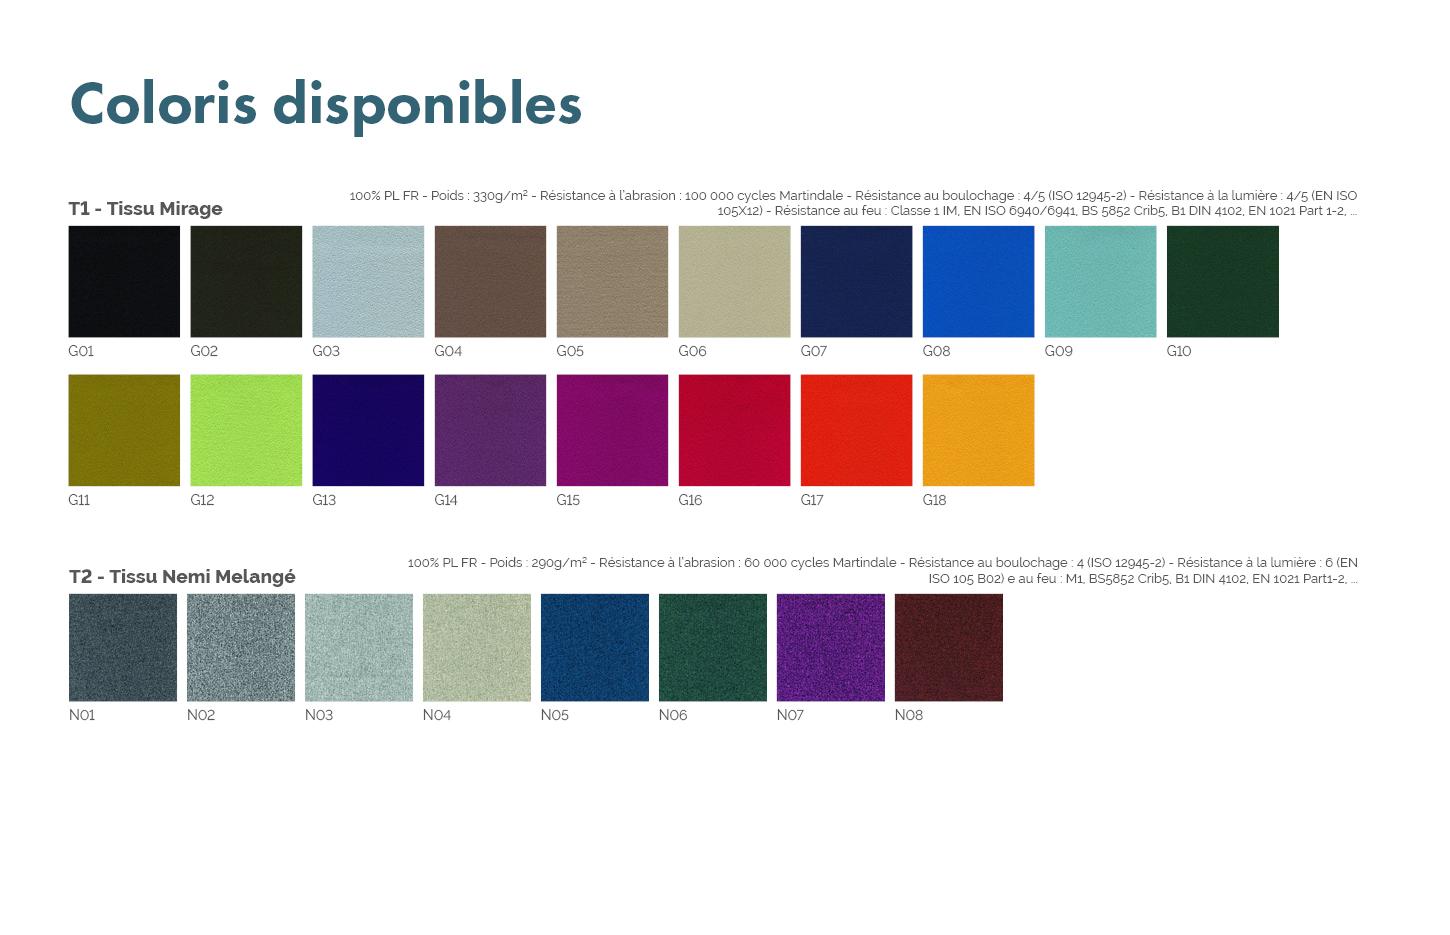 Pouf d\'accueil monochrome ou bicolore en tissu ou similcuir, gamme Toya, France Bureau